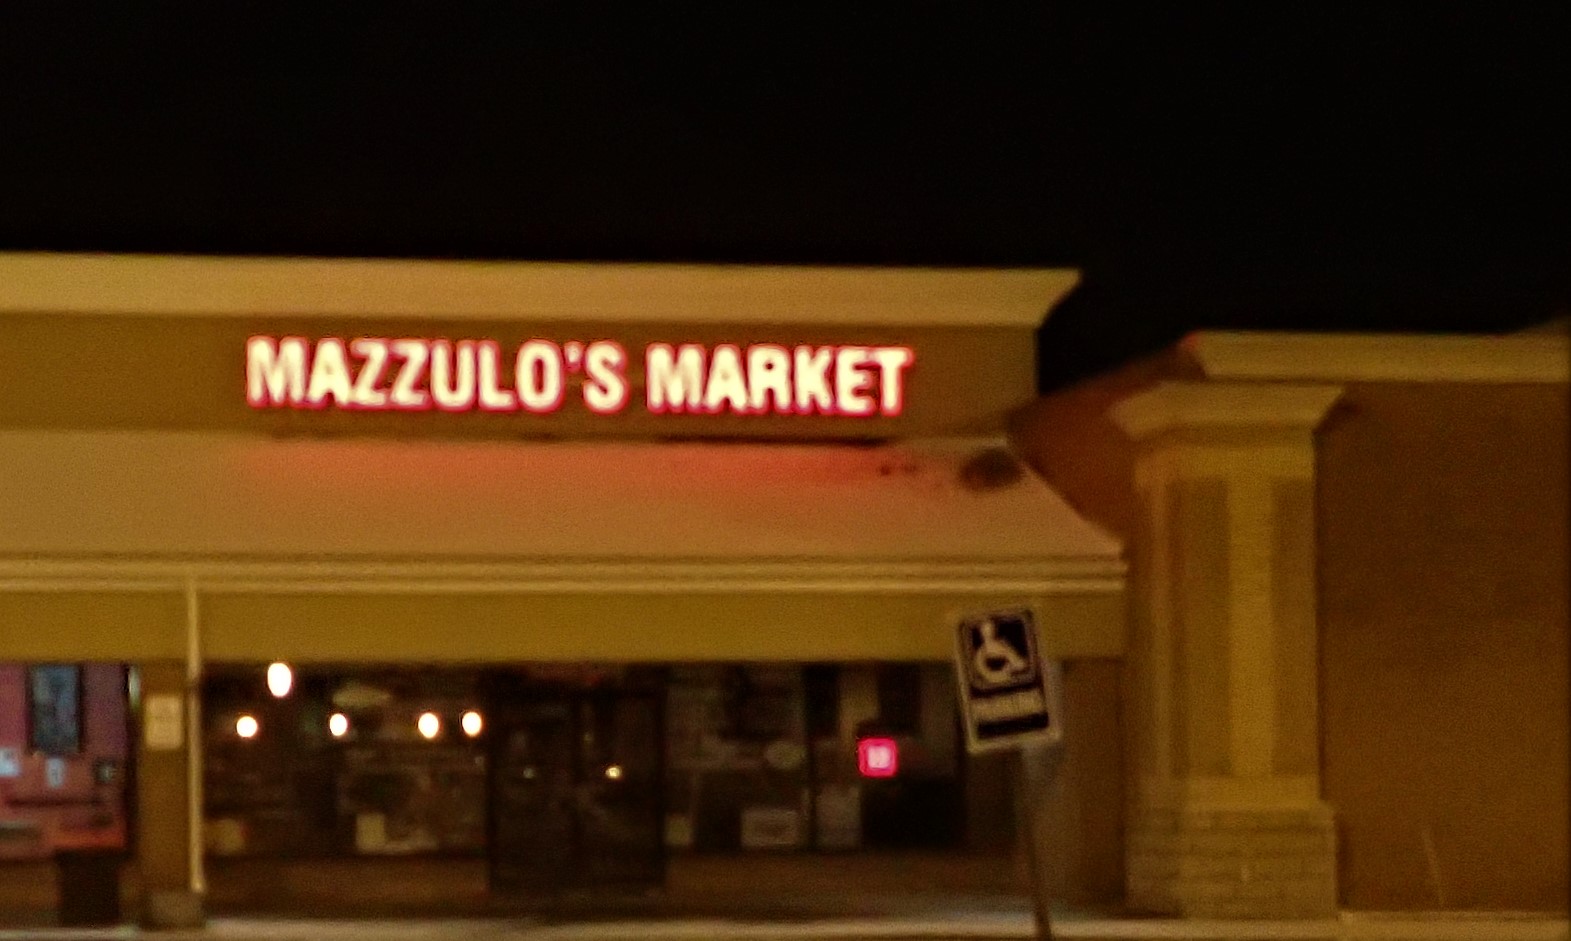 Mazzulo's Market